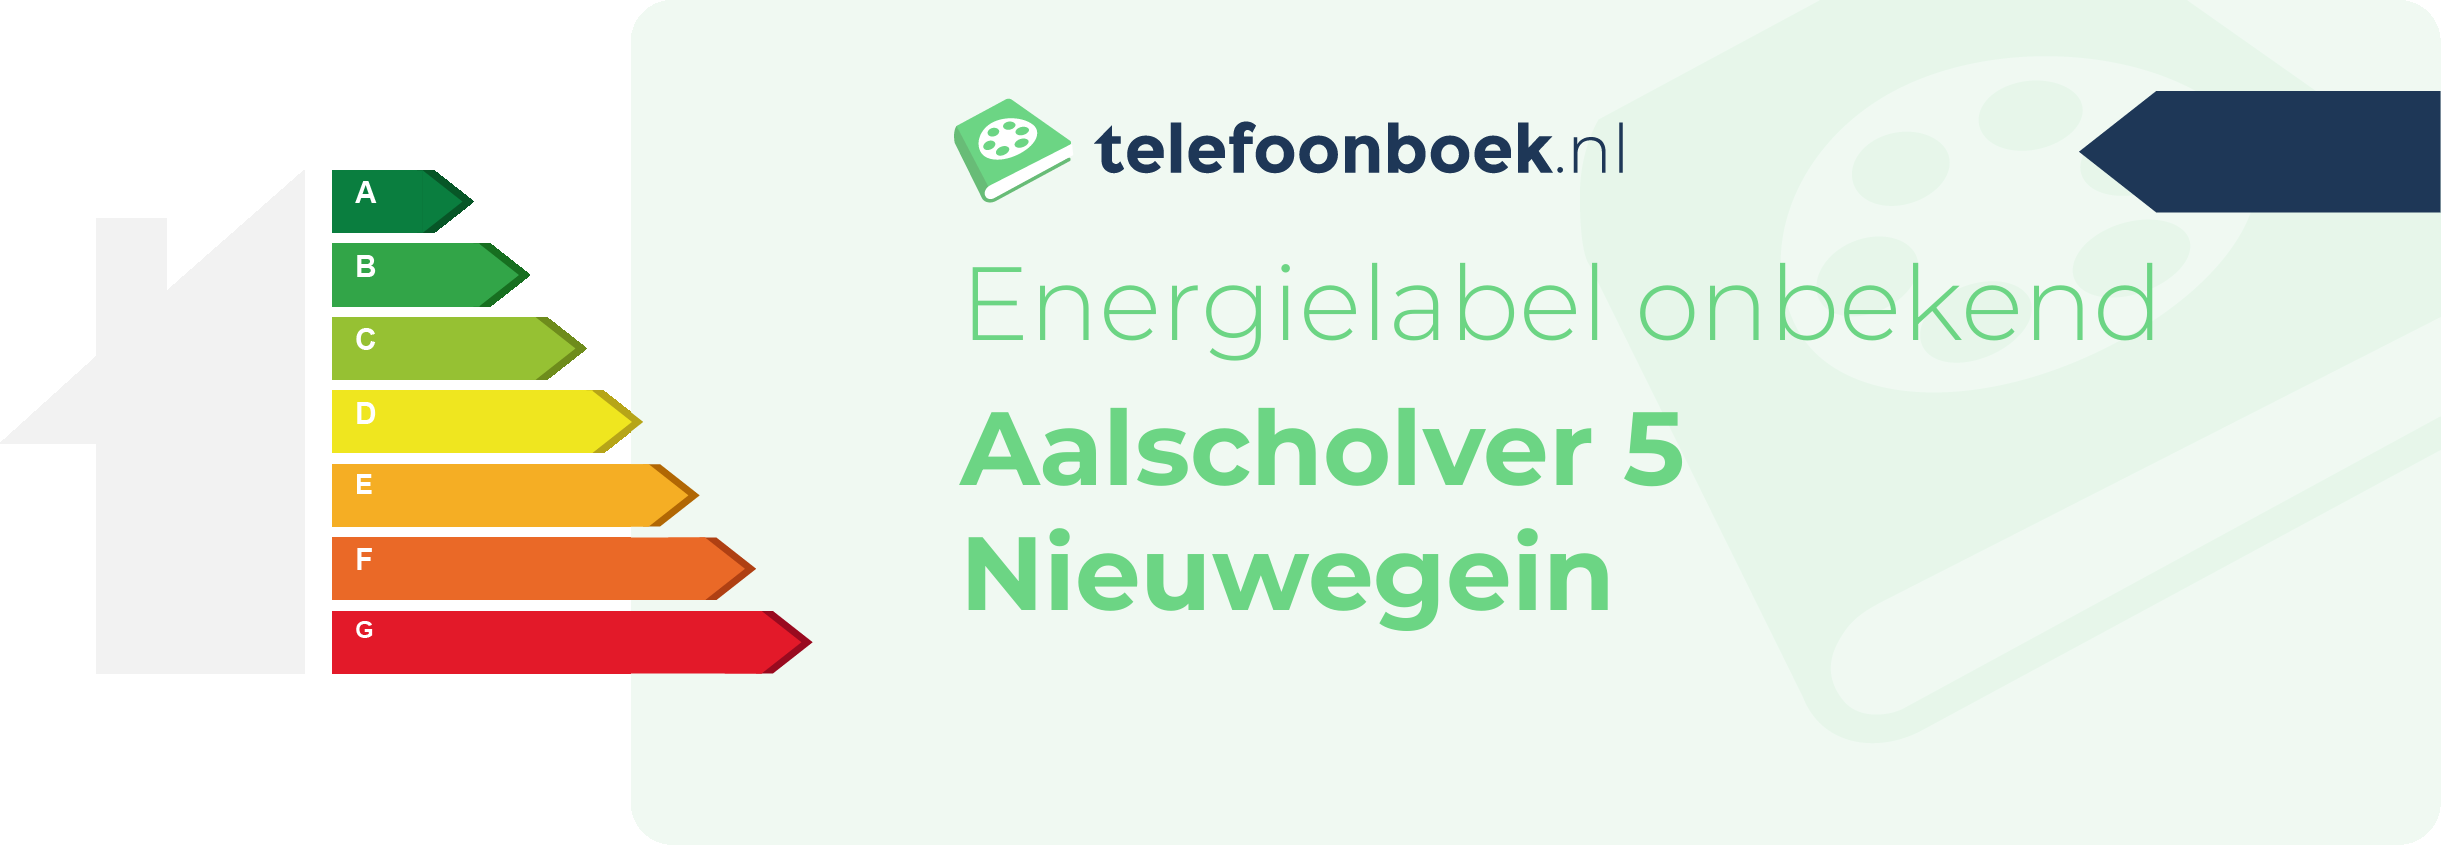 Energielabel Aalscholver 5 Nieuwegein